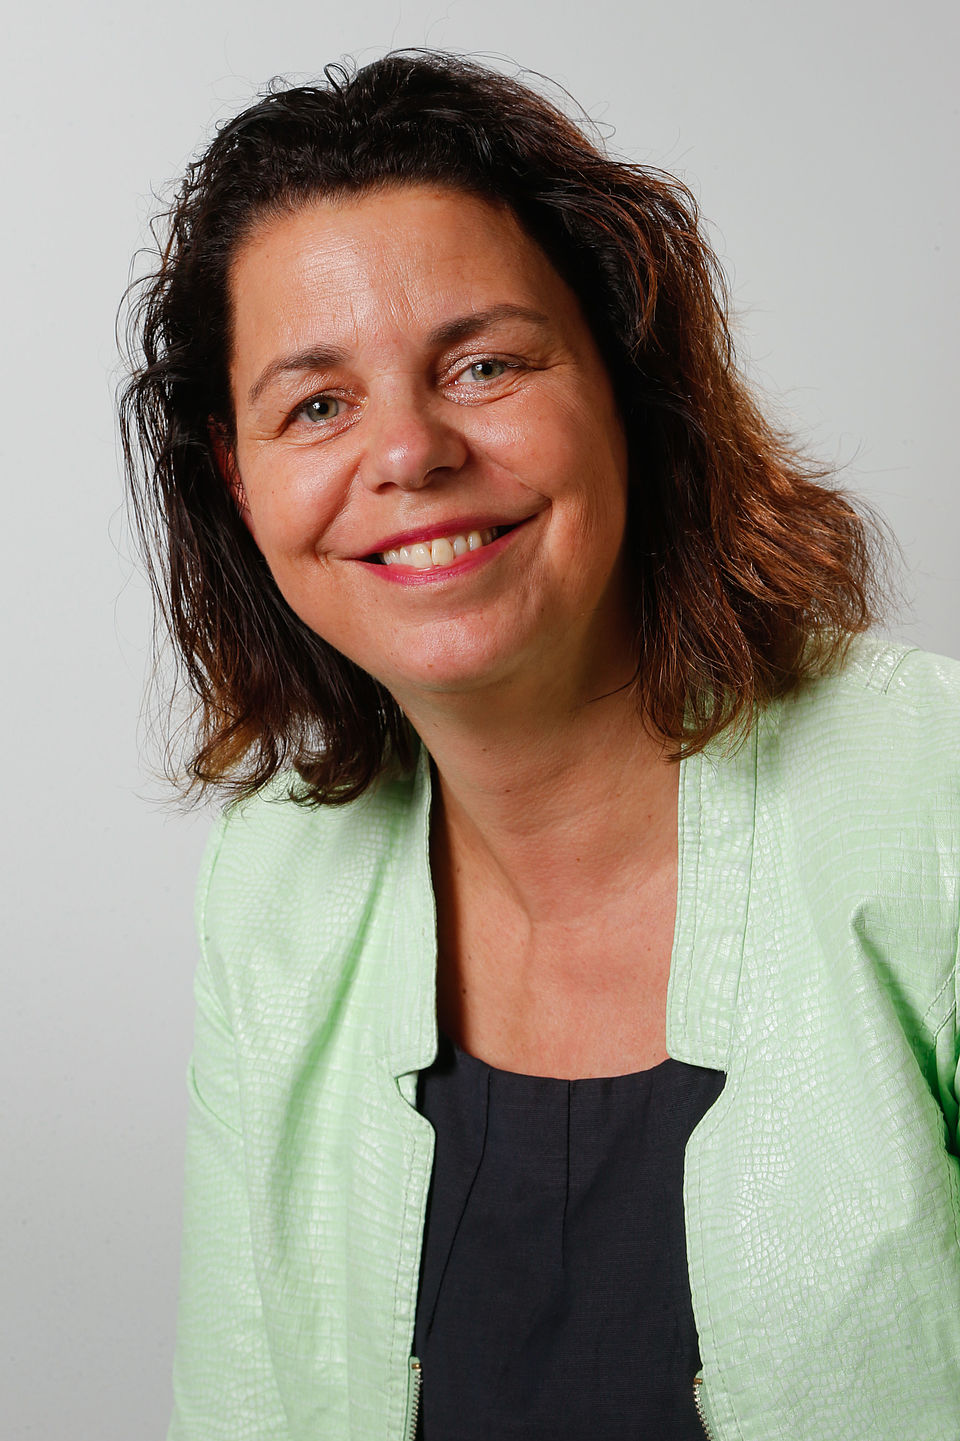 Portretfoto van mevrouw Andrea van Langen. Mevrouw van Langen draagt een licht limegroen jasje met daaronder een donkerblauw shirt.